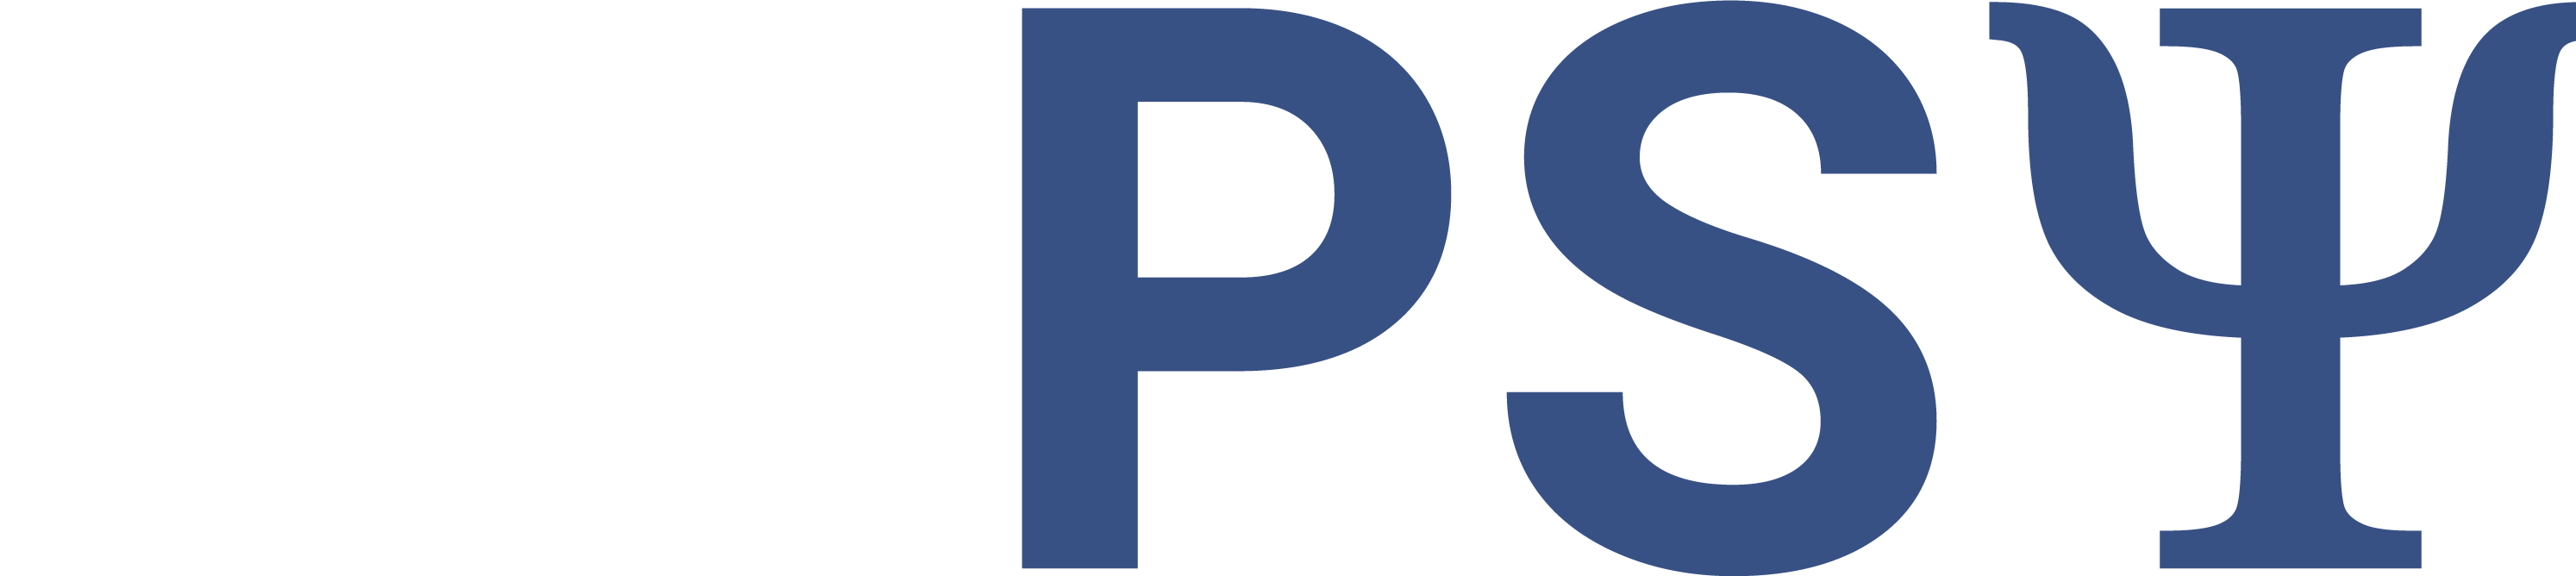 Uppsy logo